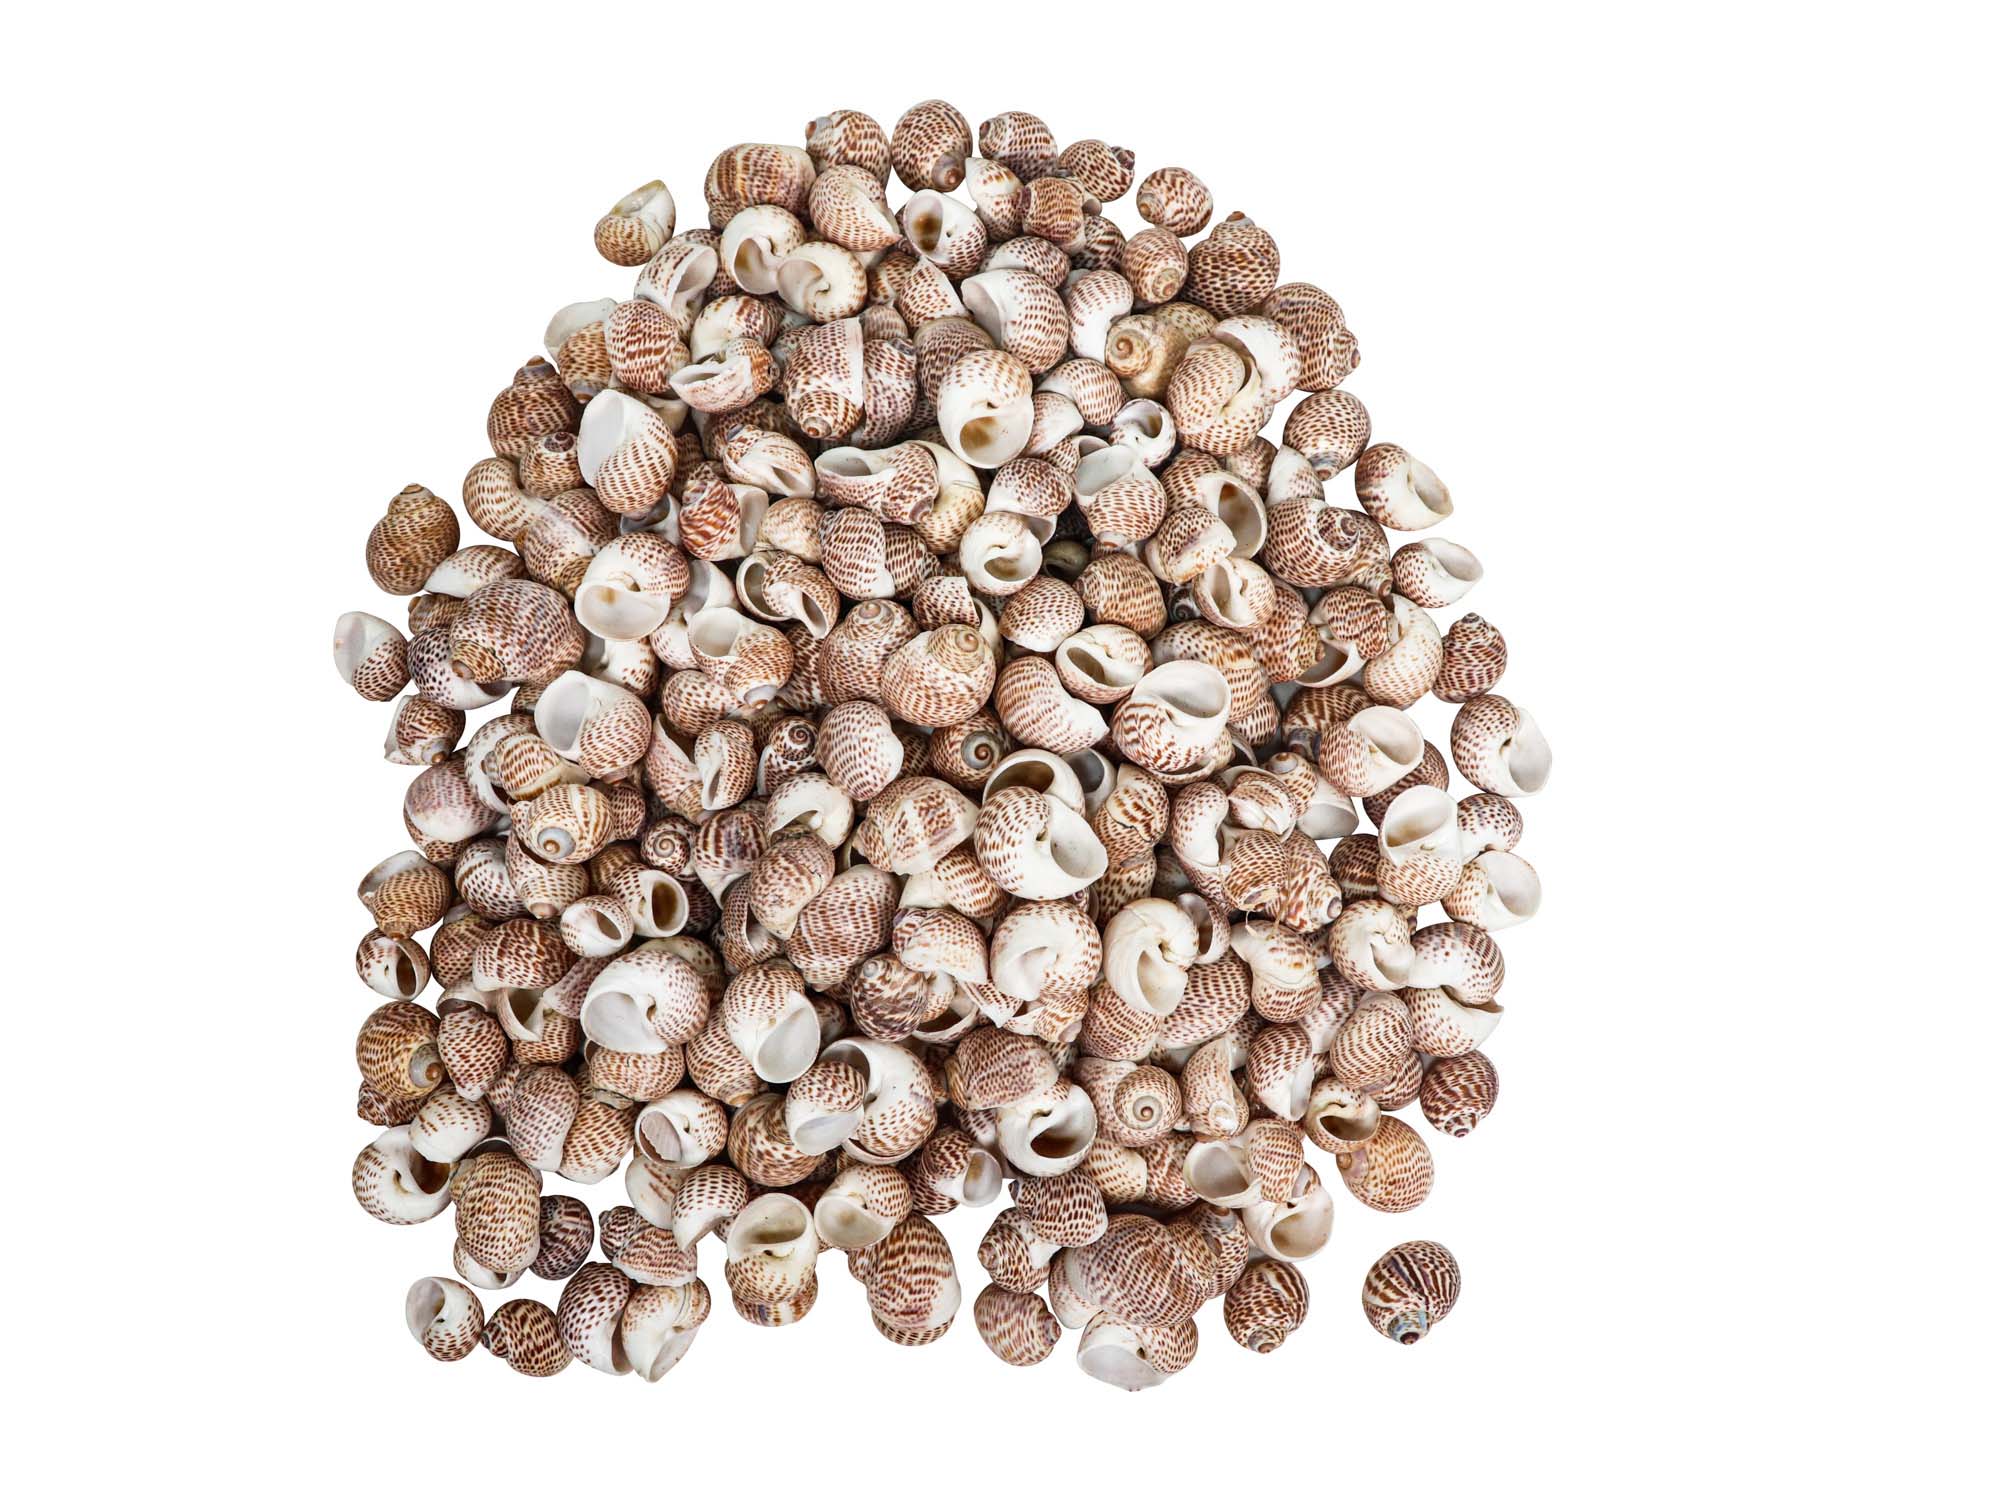 Natica Tigrina Shells 0.50"- 1" (1 kg or 2.2 lbs)      